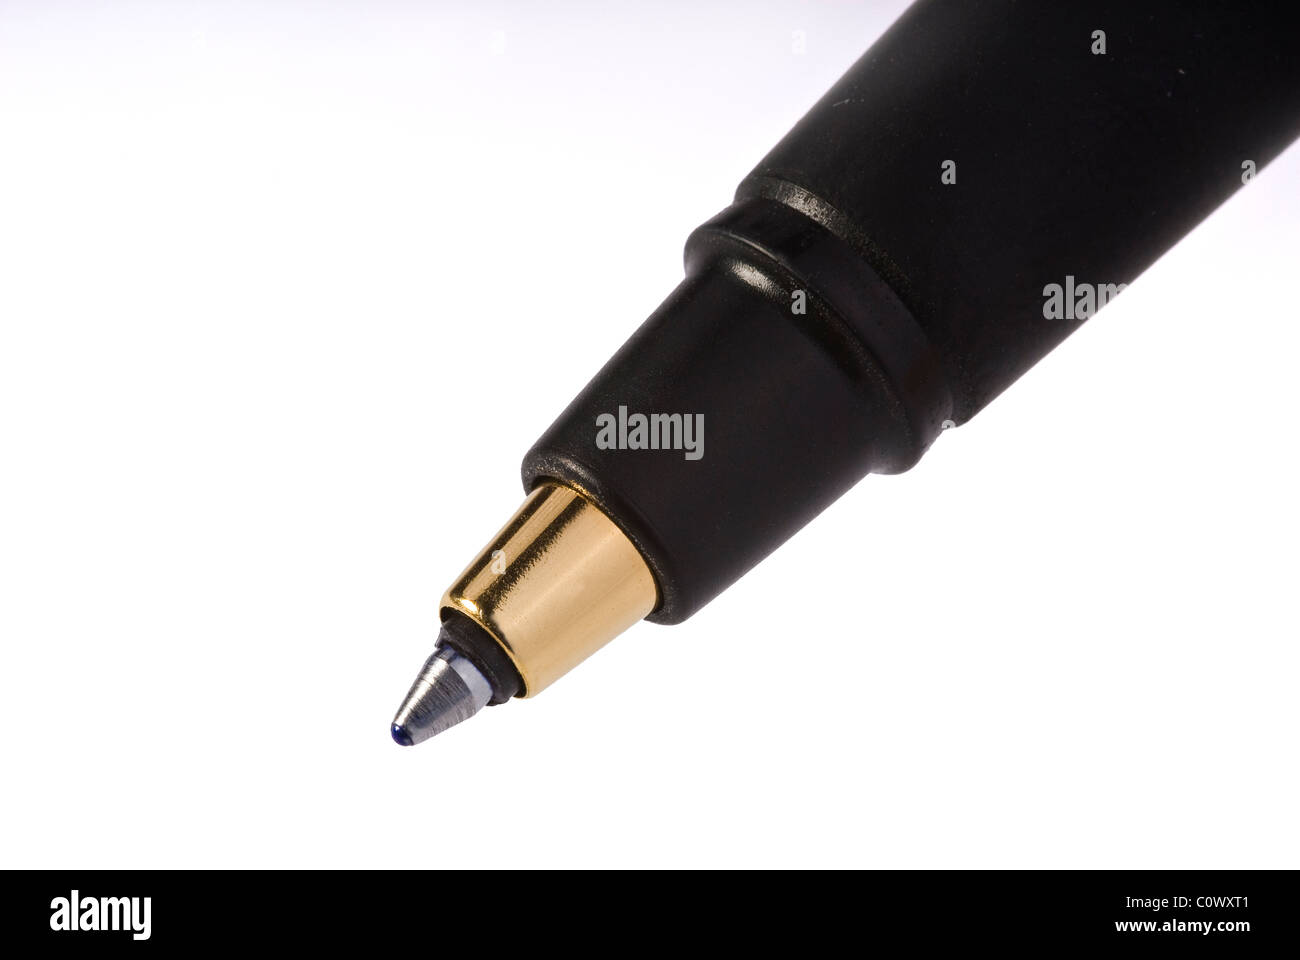 Ballpoint pen. Stock Photo